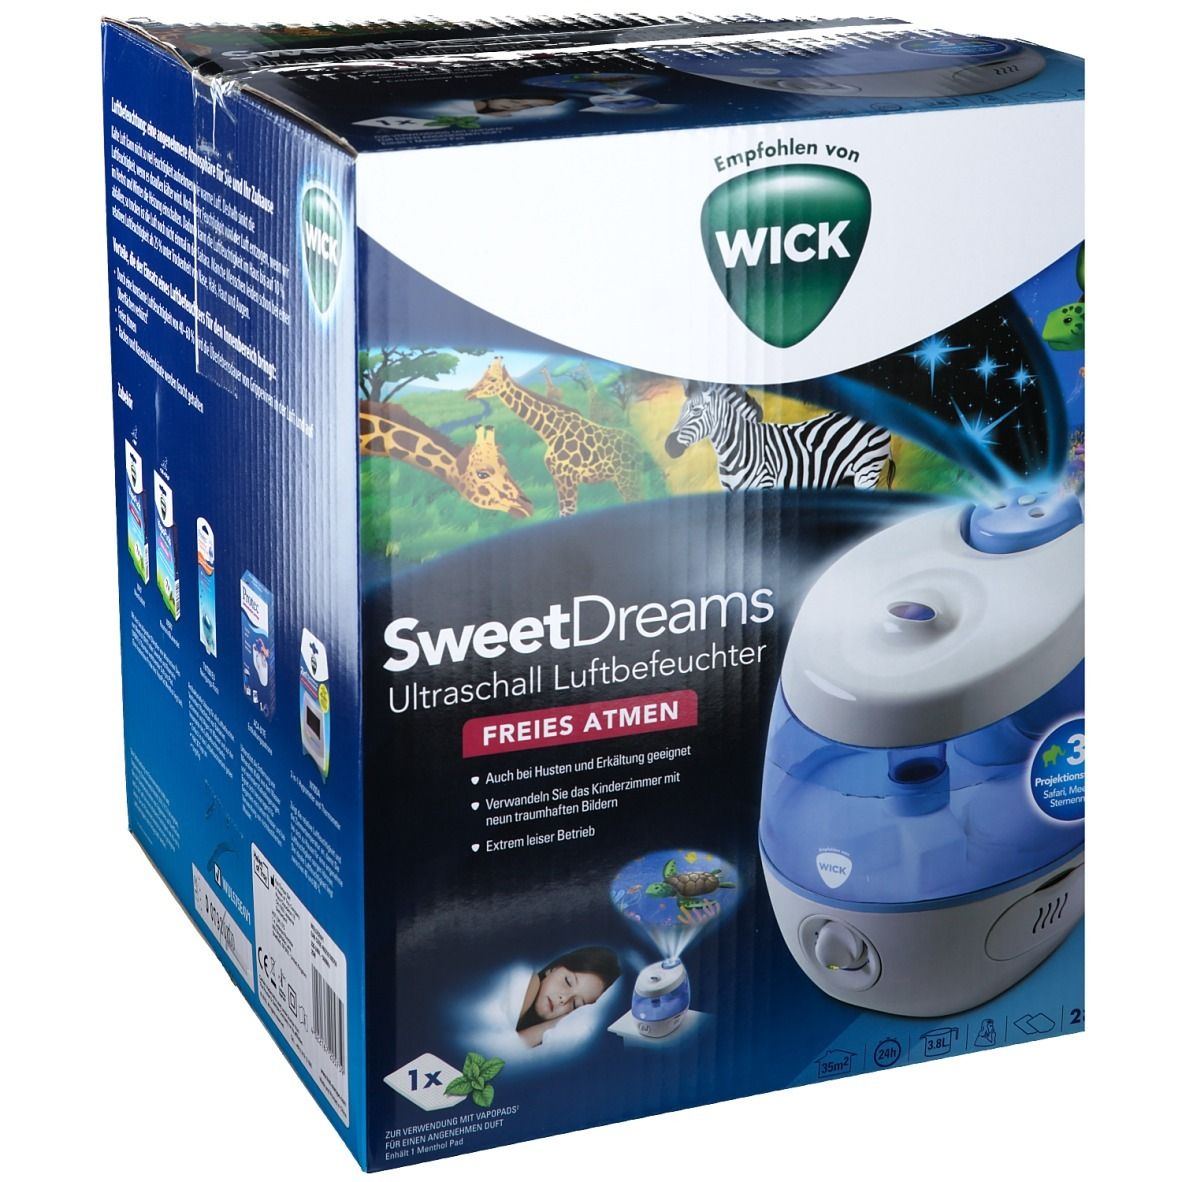 WICK SweetDreams 2-in-1 Ultraschall Luftbefeuchter